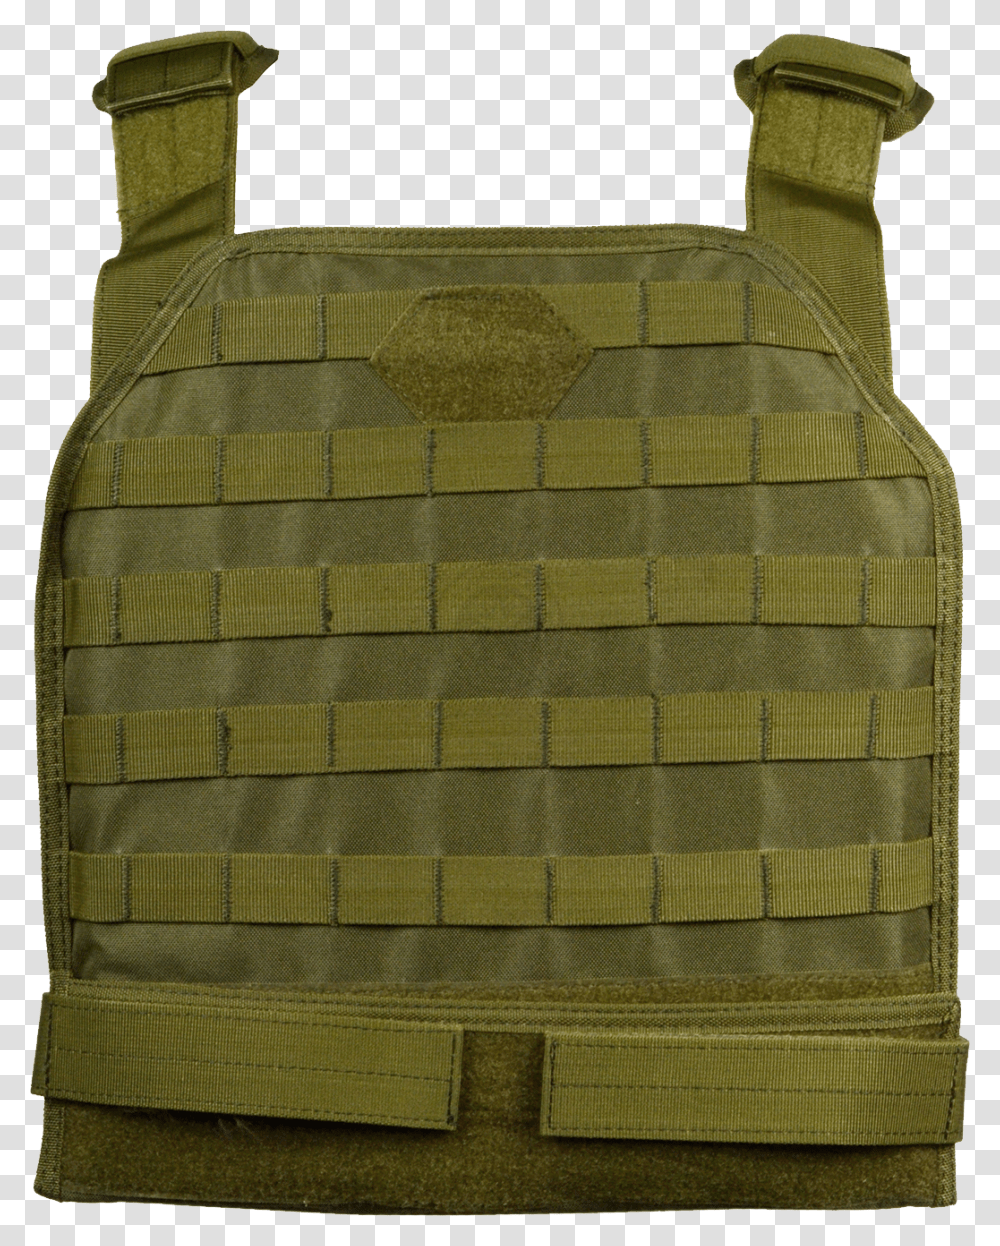 Bulletproof Vest, Weapon, Bag, Backpack, Rug Transparent Png